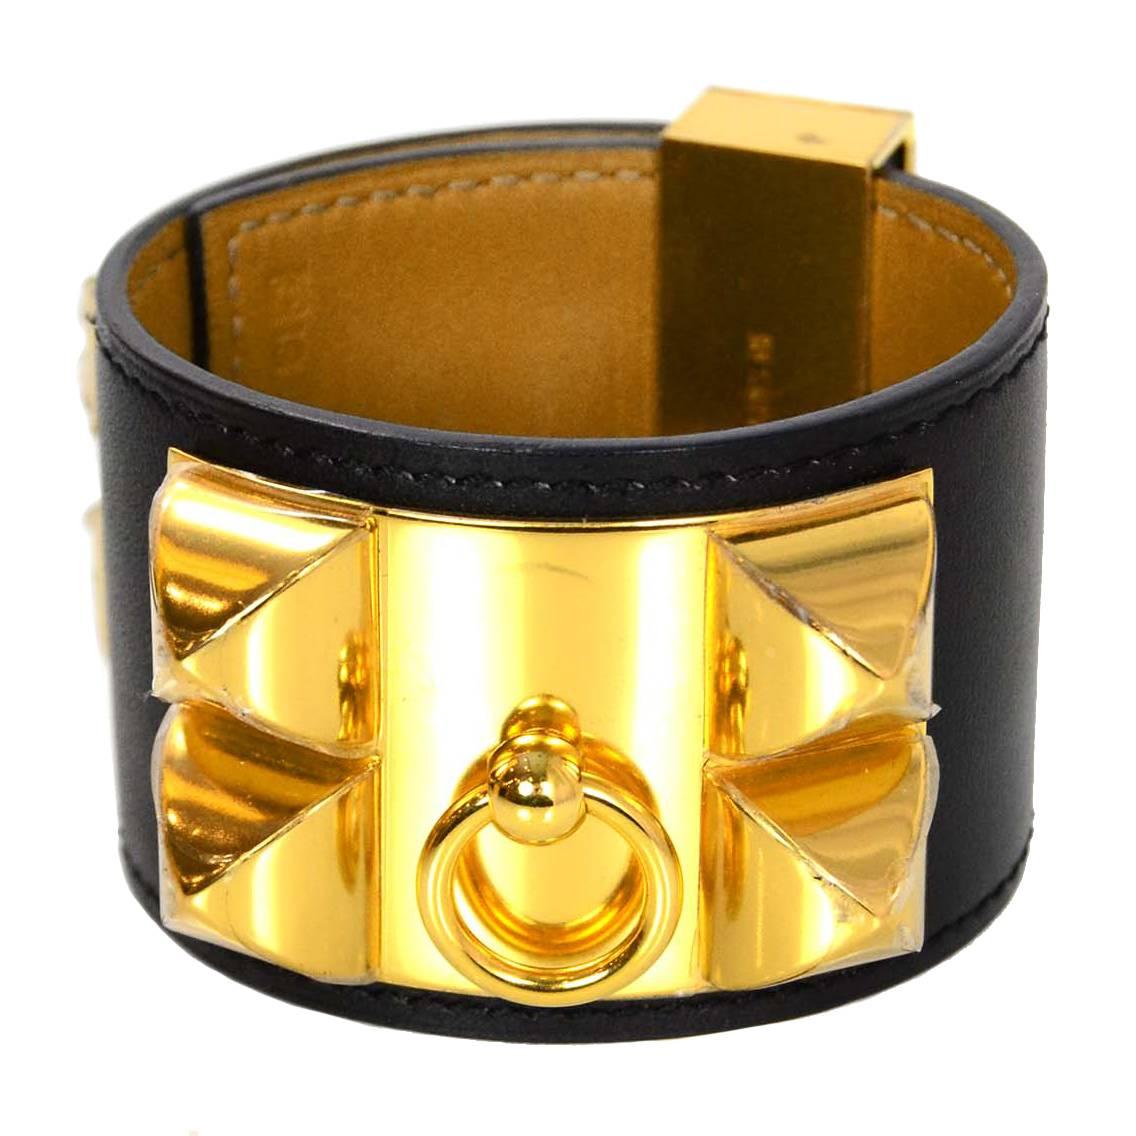 Hermes Black & Gold Collier de Chien CDC Cuff Bracelet sz S